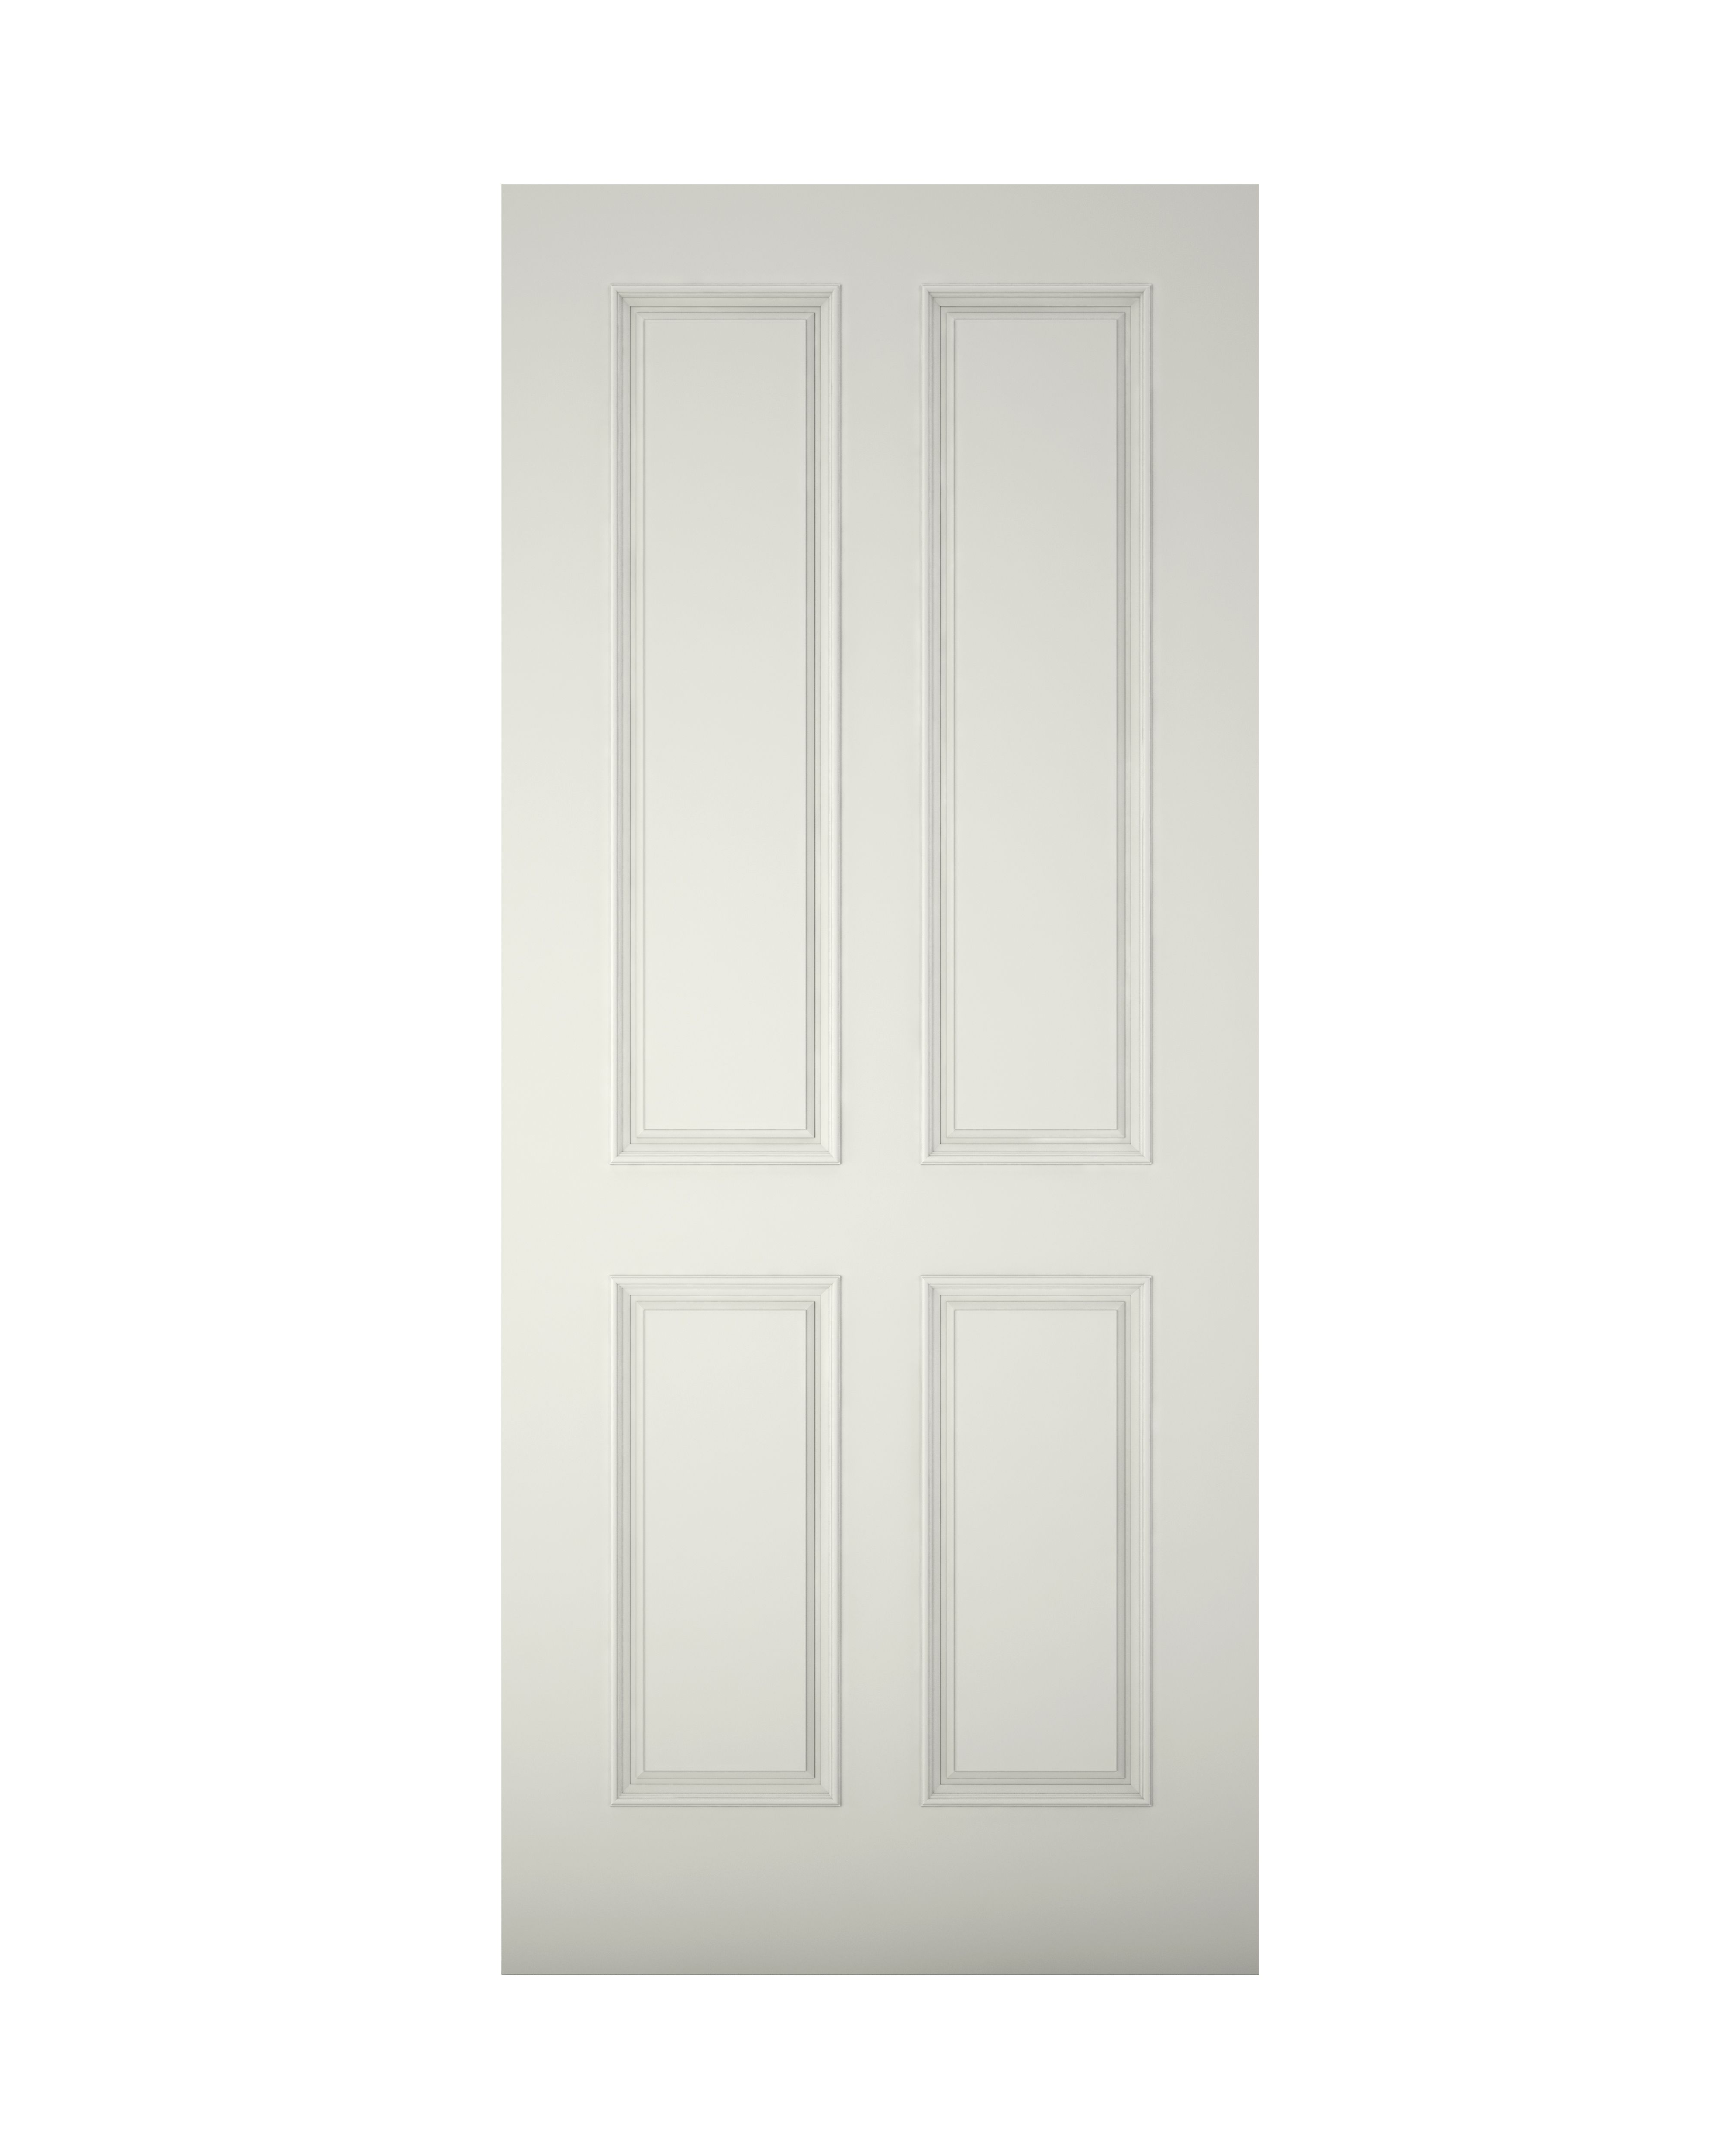 4 panel White Wooden External Panel Front door, (H)2032mm (W)813mm